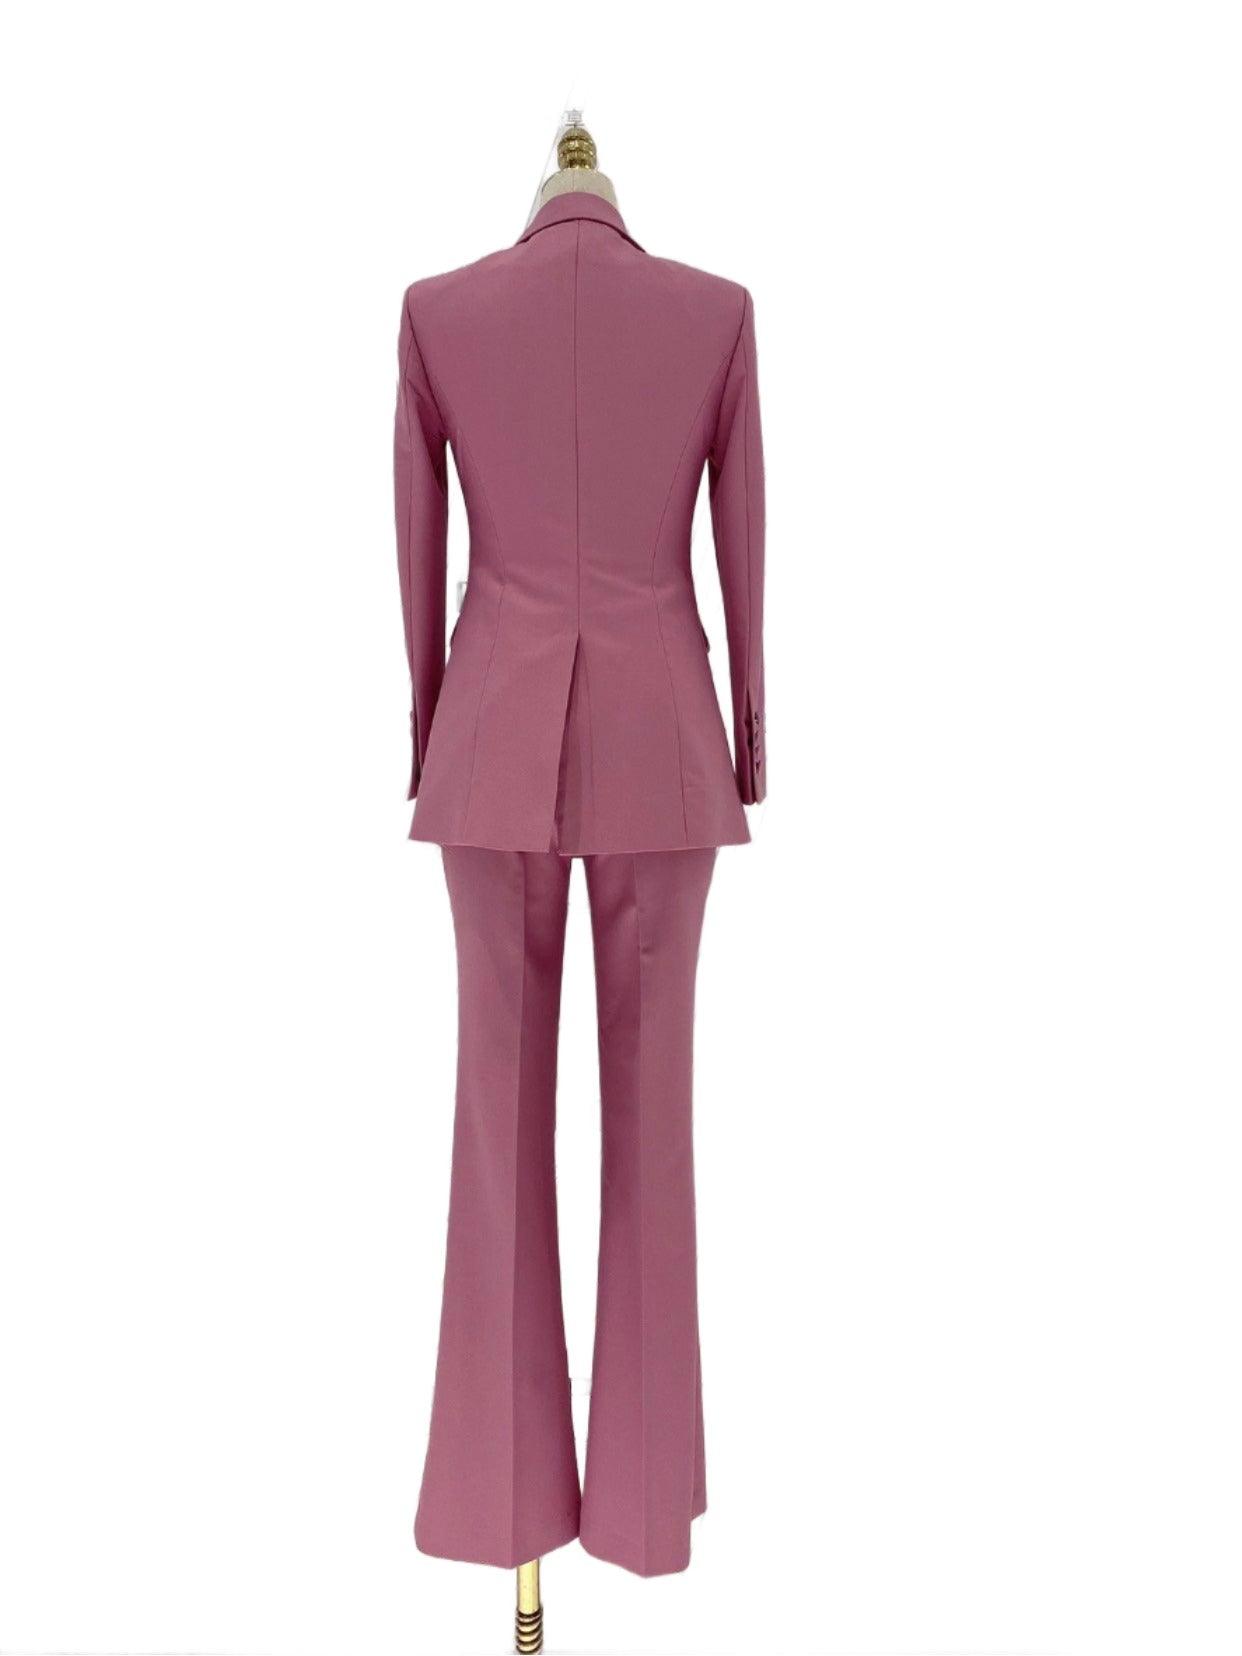 Rose Two Piece Pant Suit - Women Slim Fit Trouser Suit - Pantsuit - Guocali